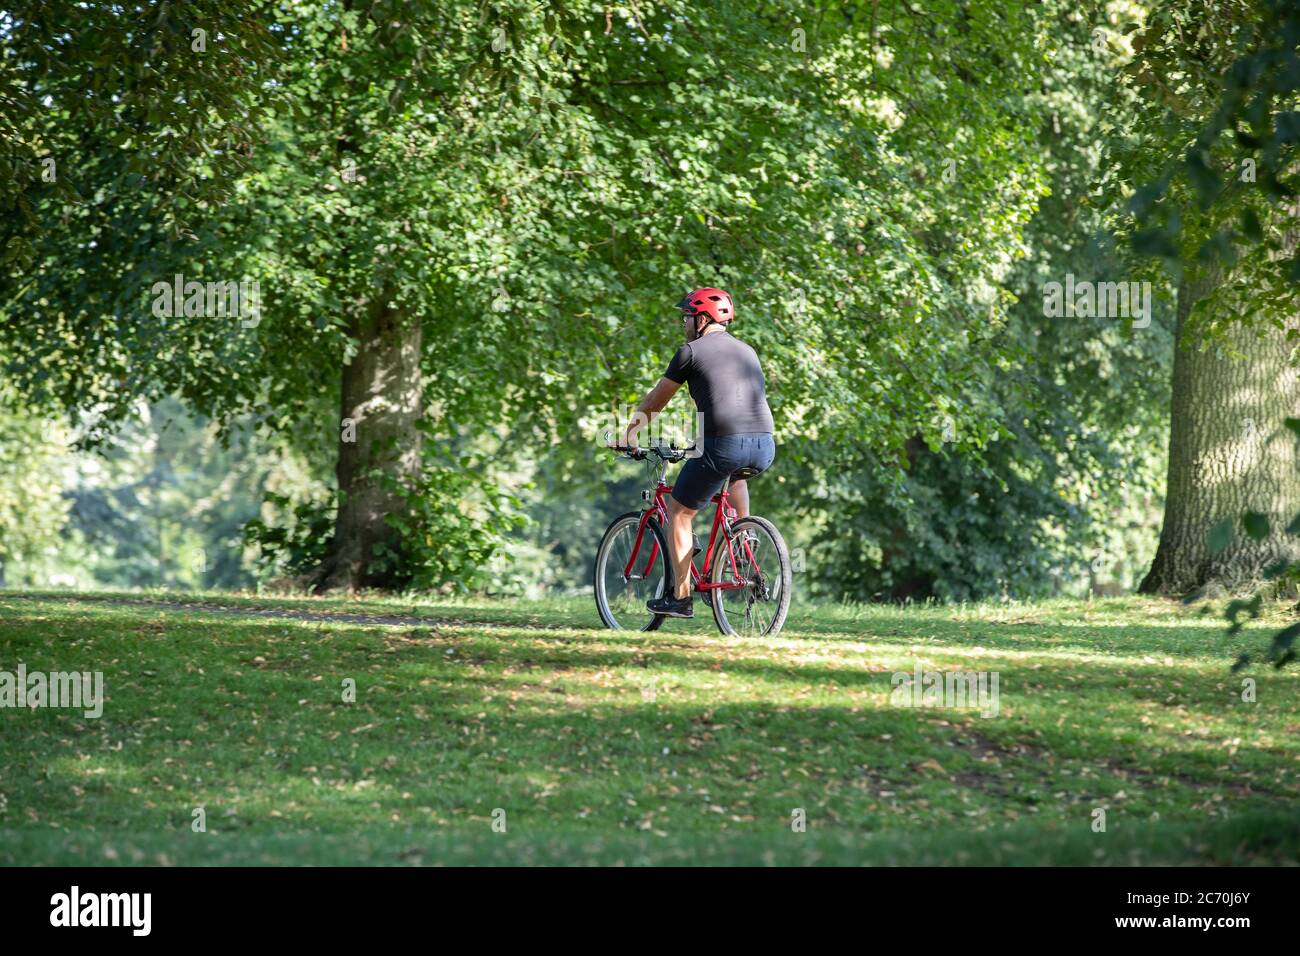 Cycliste masculin sur un vélo rouge se faire un exercice matinal, Abington Park, Northampton, Angleterre, Royaume-Uni. Banque D'Images